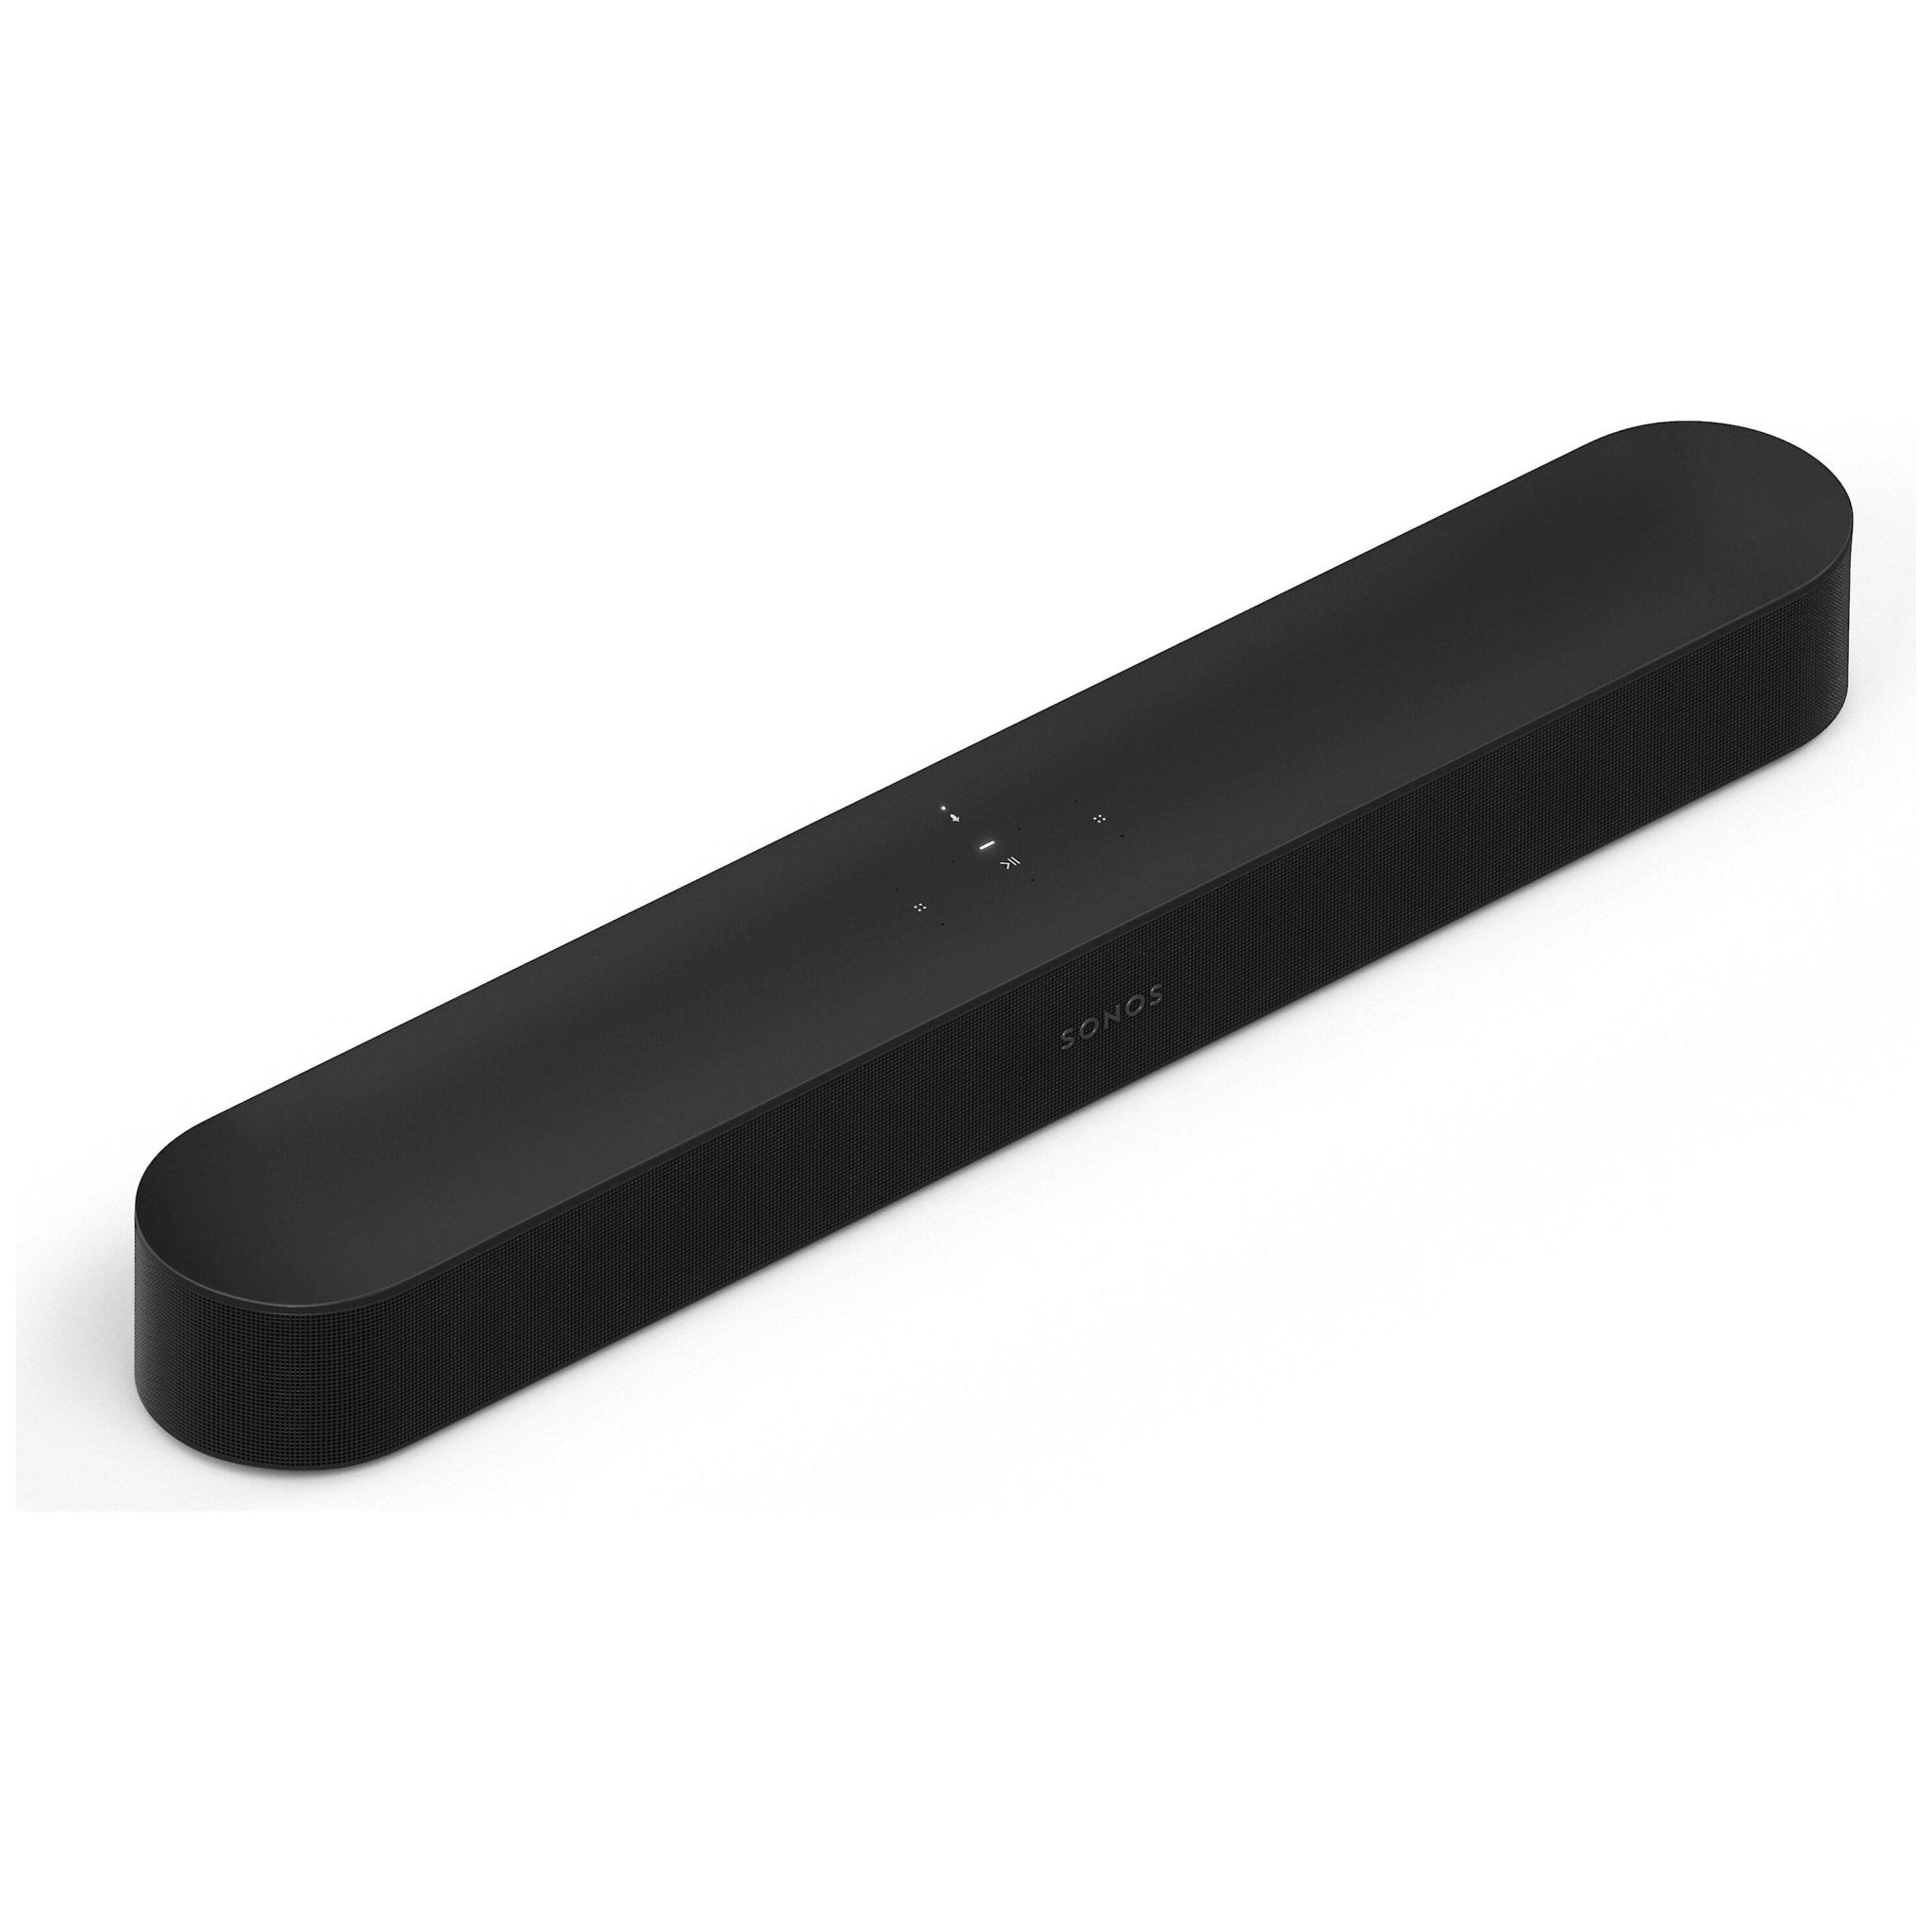 Sonos Beam Gen 1 review: Good sound, great price